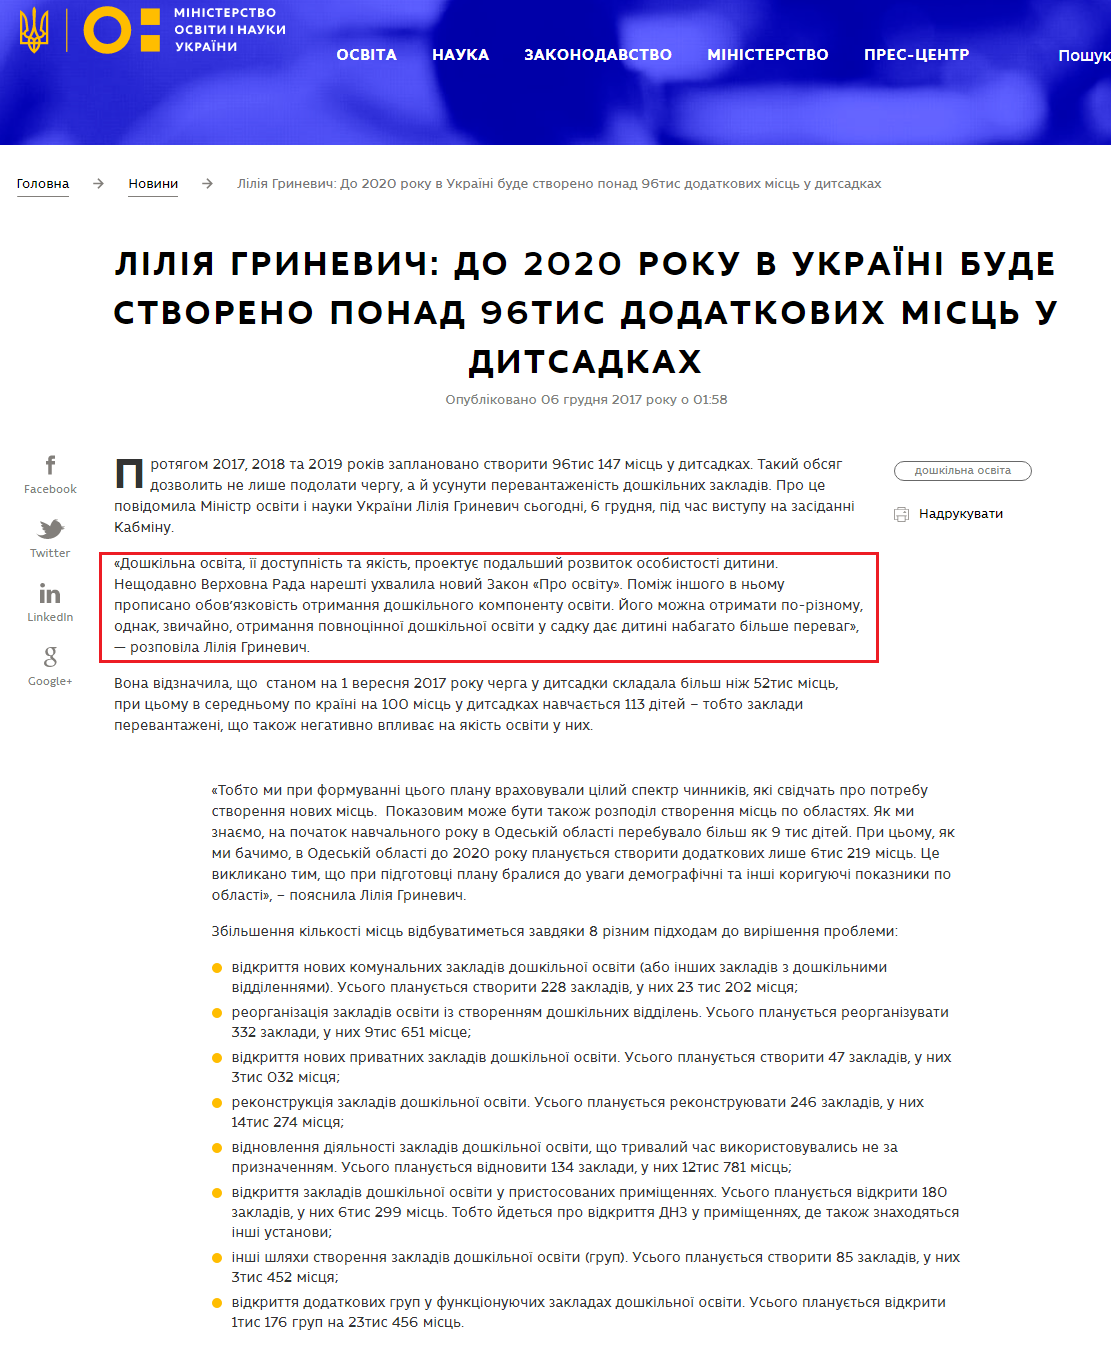 https://mon.gov.ua/ua/news/liliya-grinevich-do-2020-roku-v-ukrayini-bude-stvoreno-ponad-96tis-dodatkovih-misc-u-ditsadkah